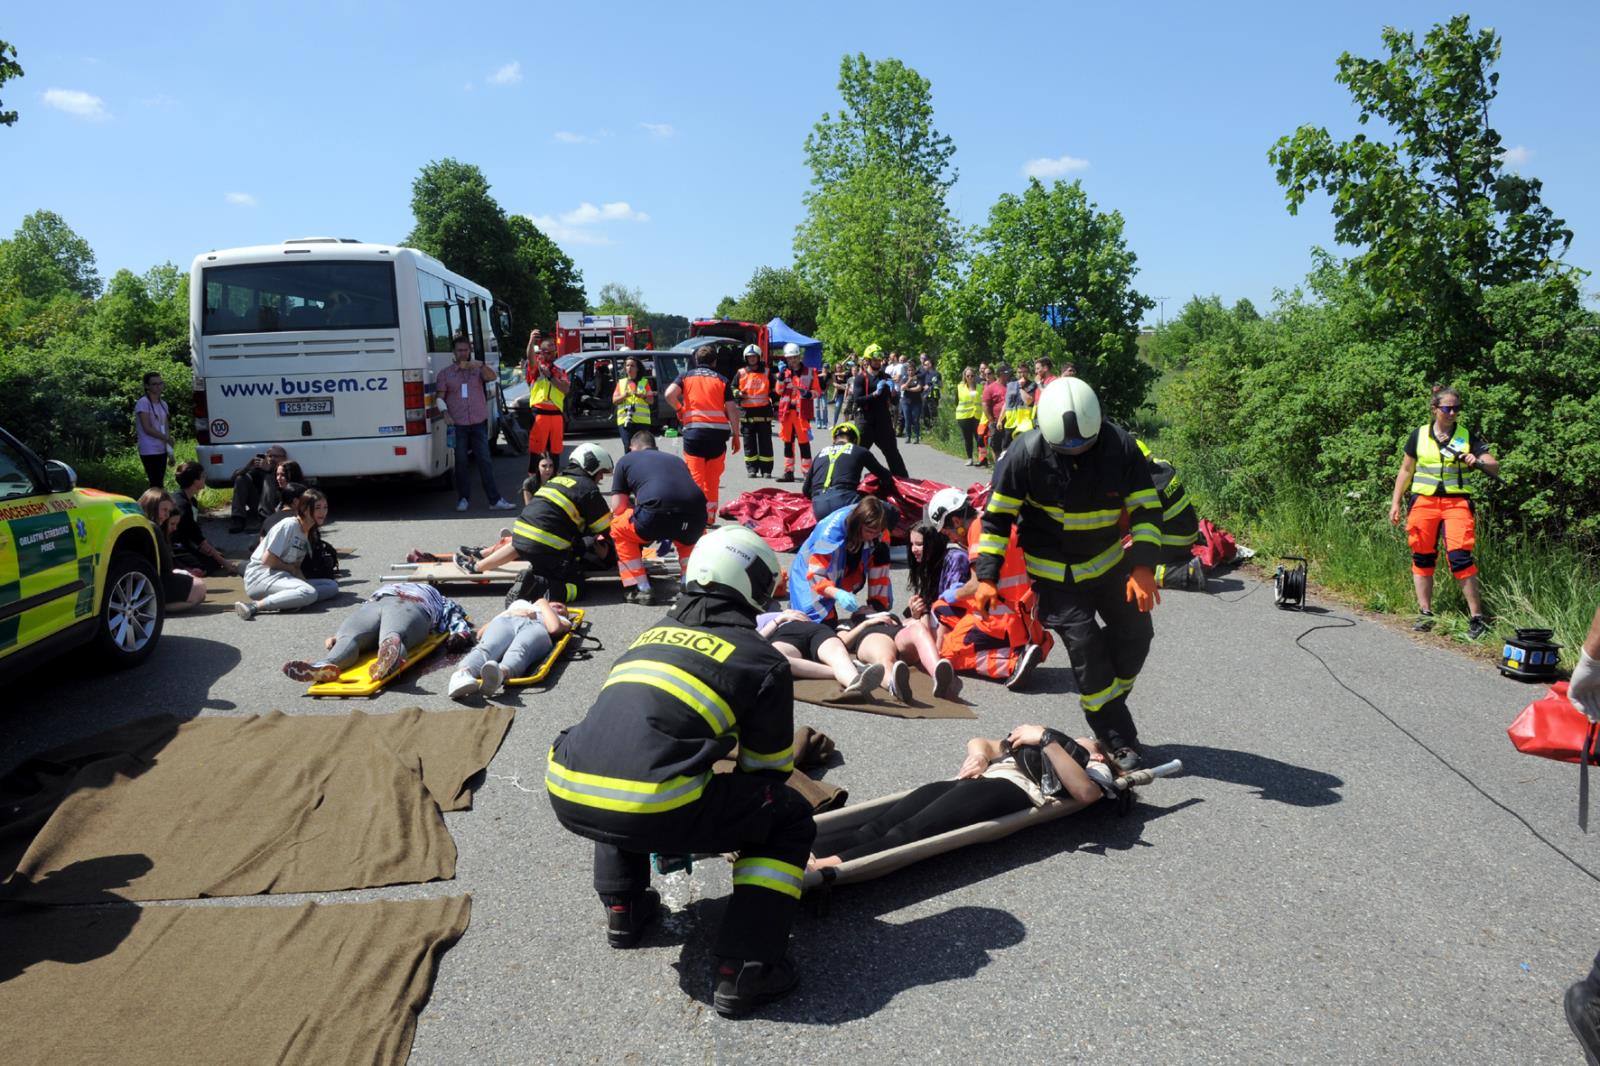 Taktické cvičení dopravní nehoda 2 OA a bus, Písek - 18. 5. 2022 (33).JPG